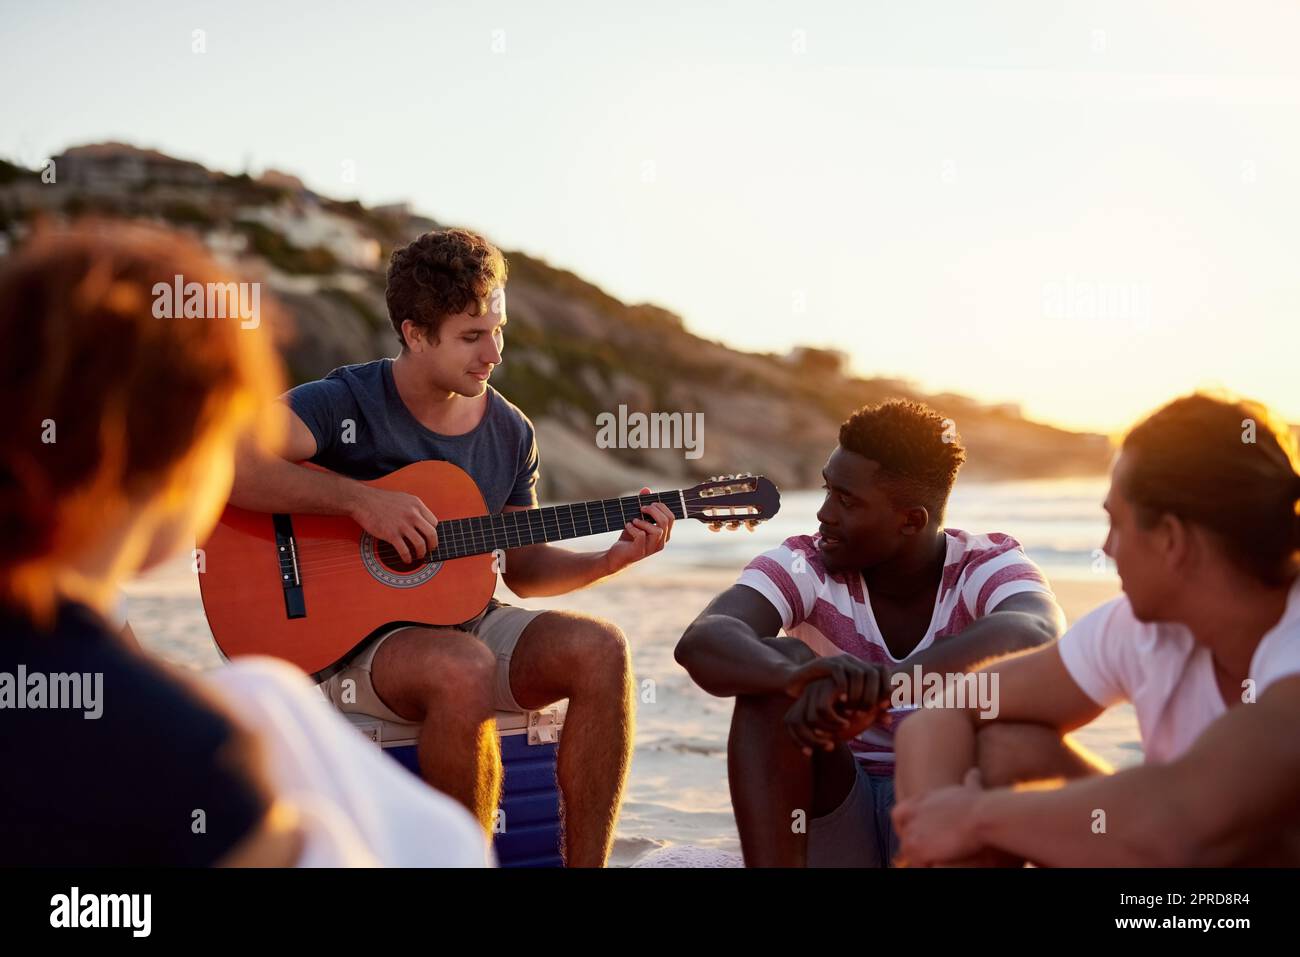 La musica è ciò che unisce le persone: Un uomo che suona la chitarra mentre si siede in spiaggia con i suoi amici. Foto Stock